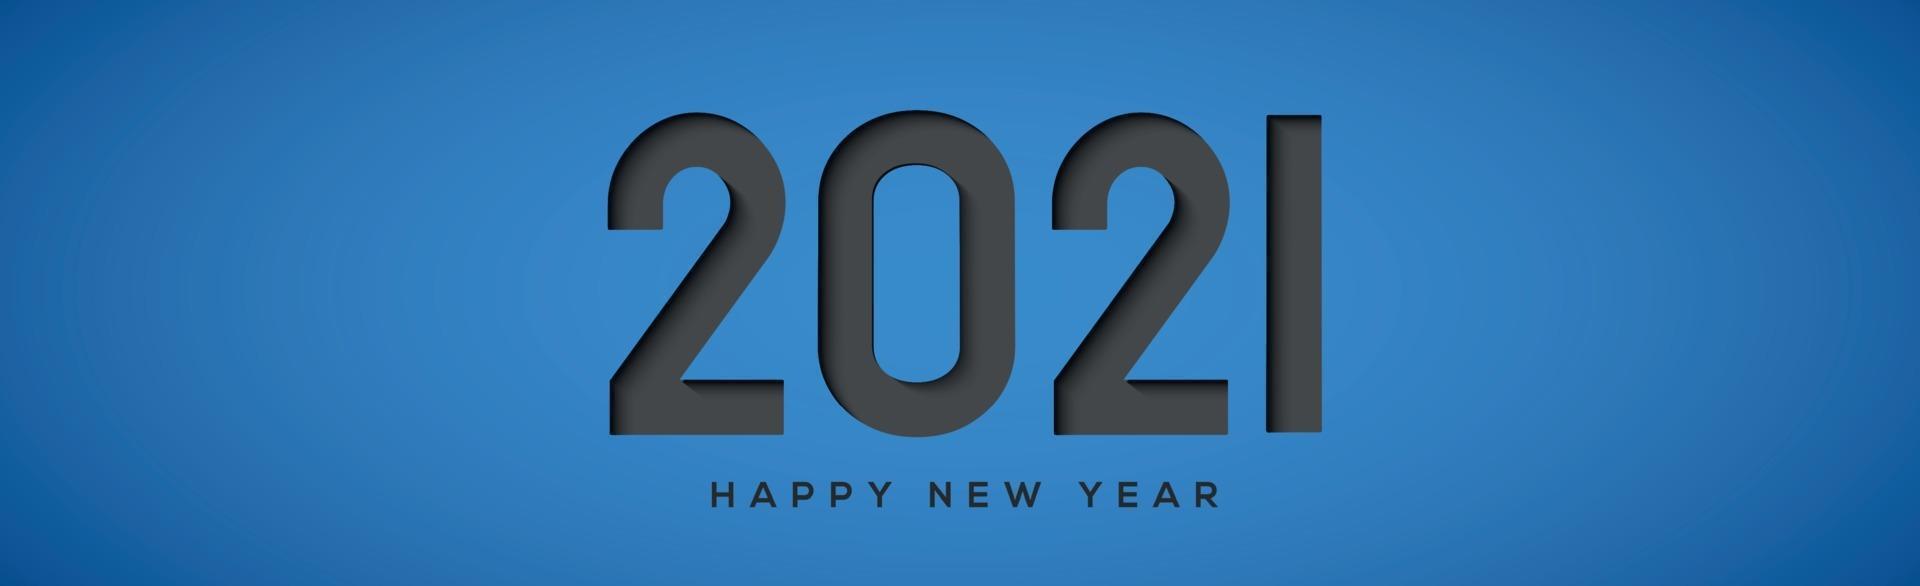 2021 con deseo de año nuevo sobre fondo azul. vector